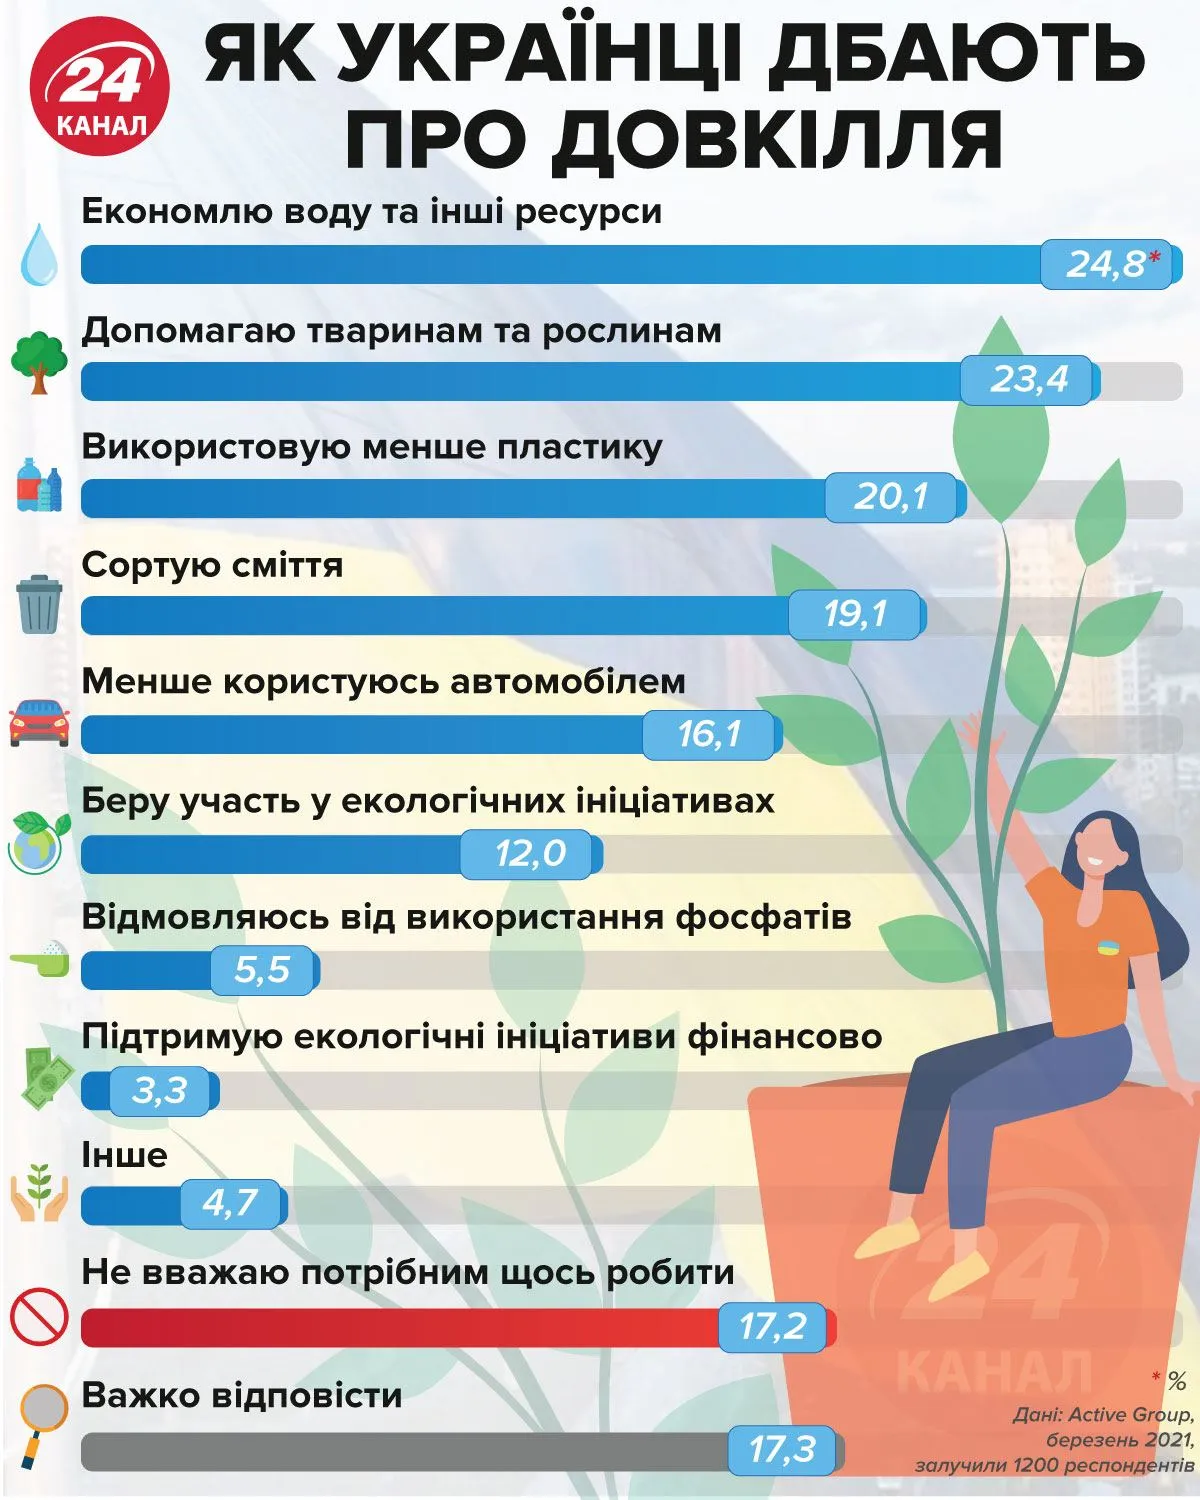 Как украинцы заботятся об окружающей среде / Инфографика 24 канала